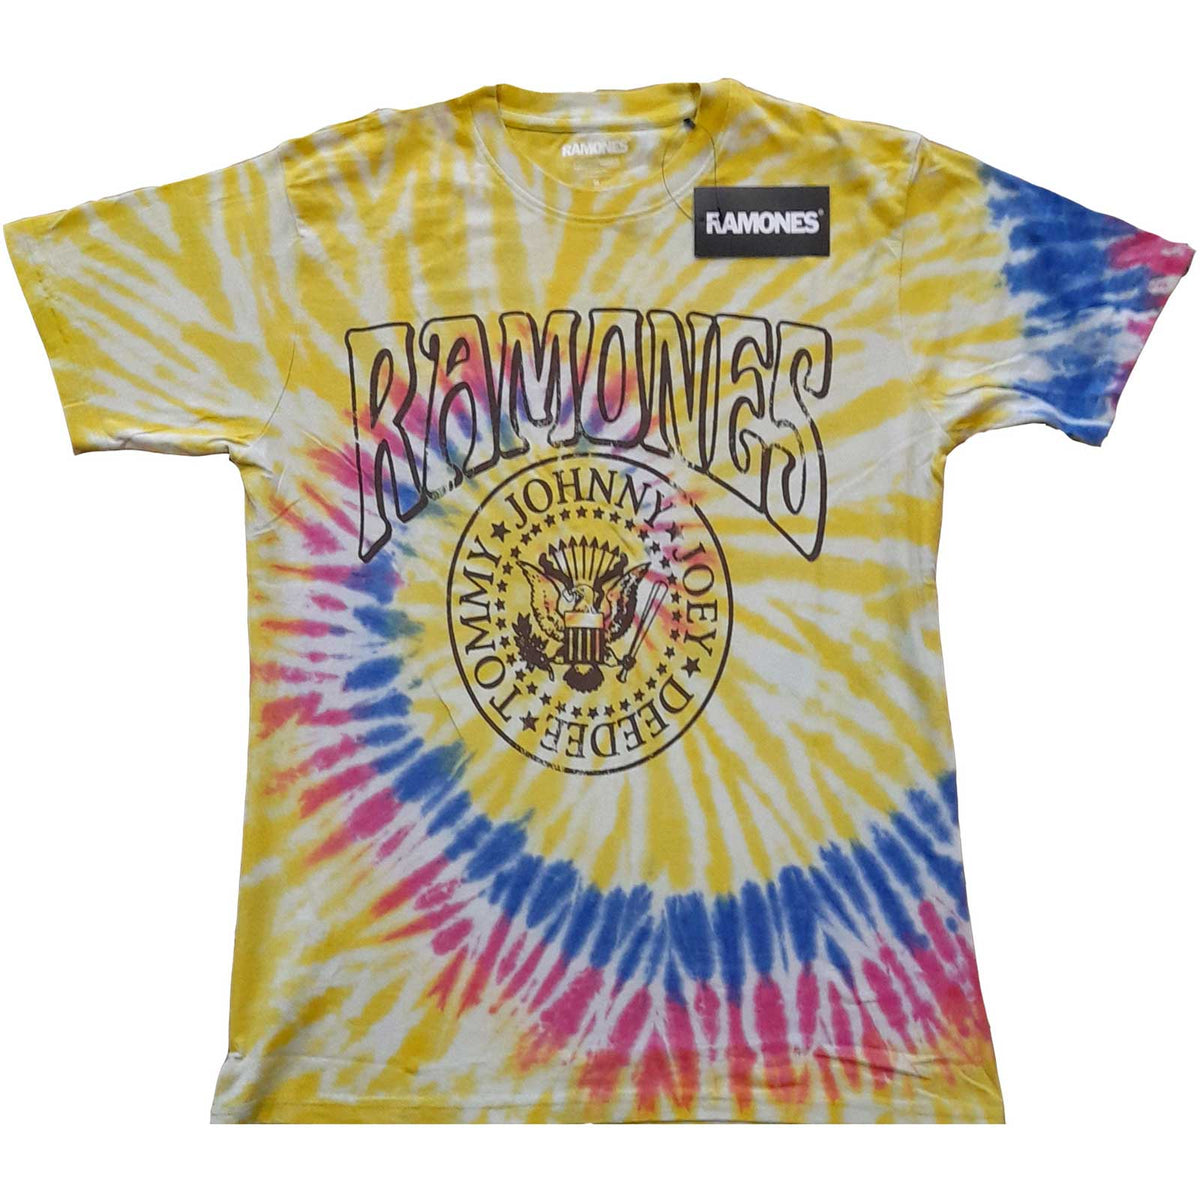 Das Ramones-Unisex-T-Shirt für Erwachsene – Crest Psych (Wash-Kollektion) – offiziell lizenziertes Design